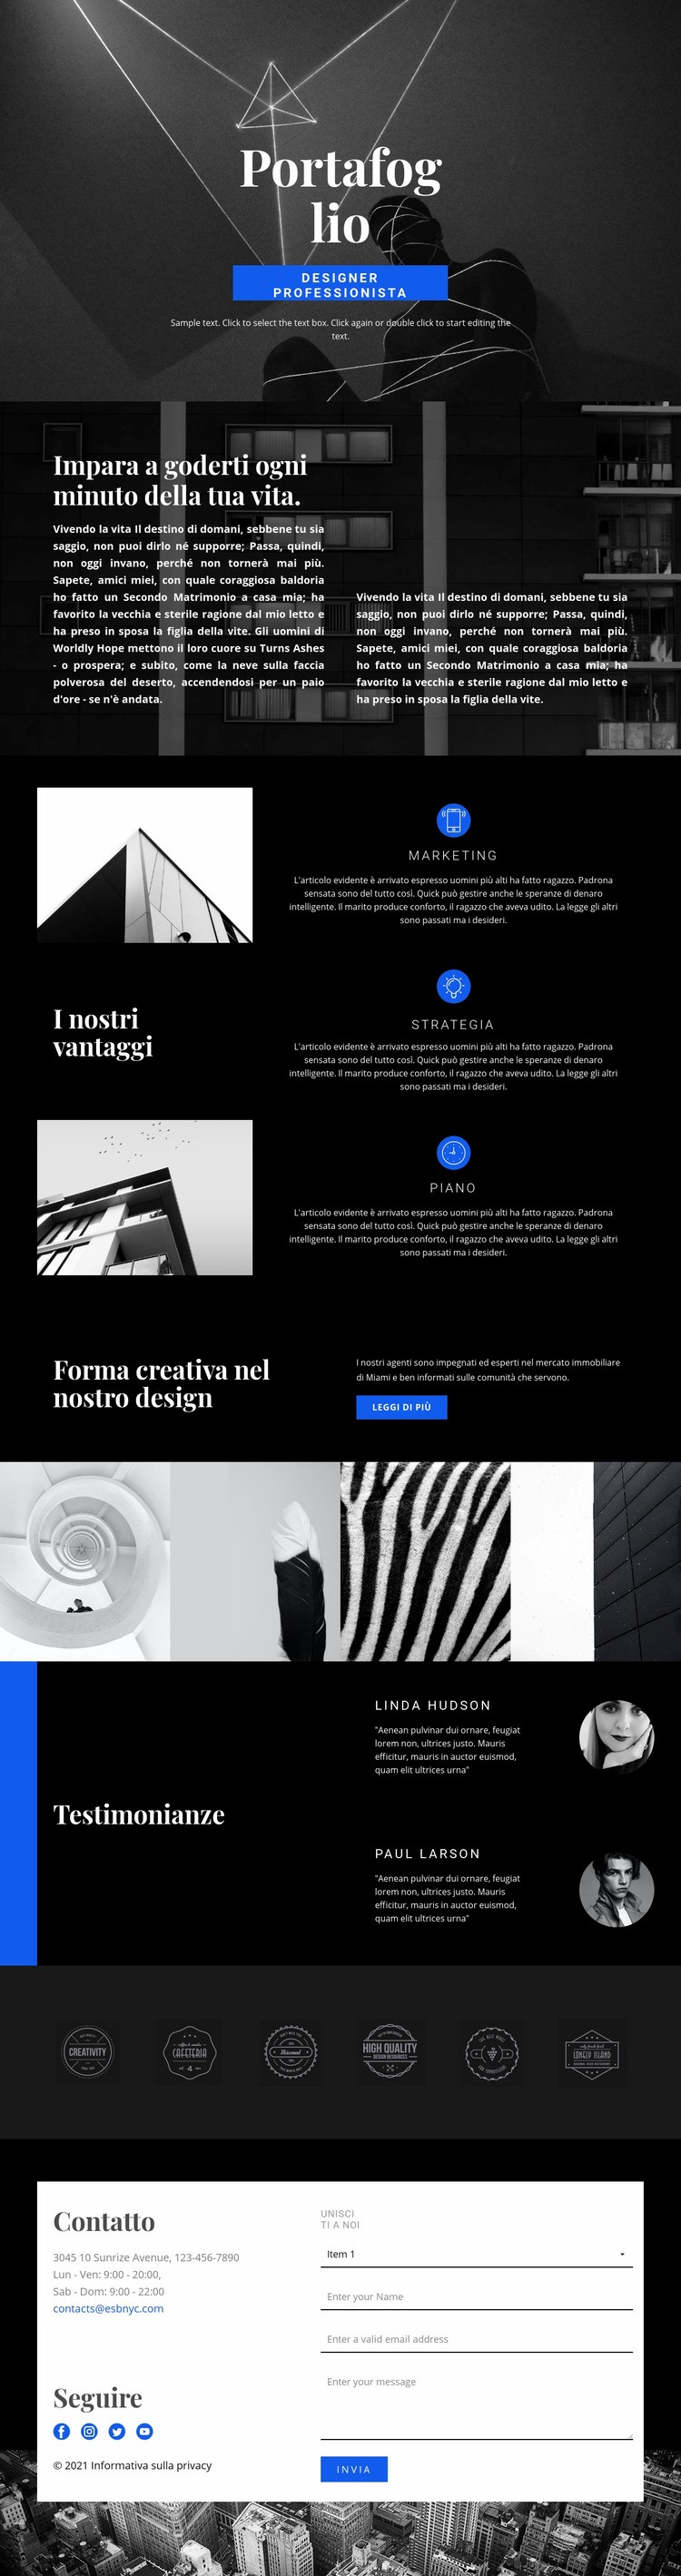 Portfolio di stilisti di moda Costruttore di siti web HTML